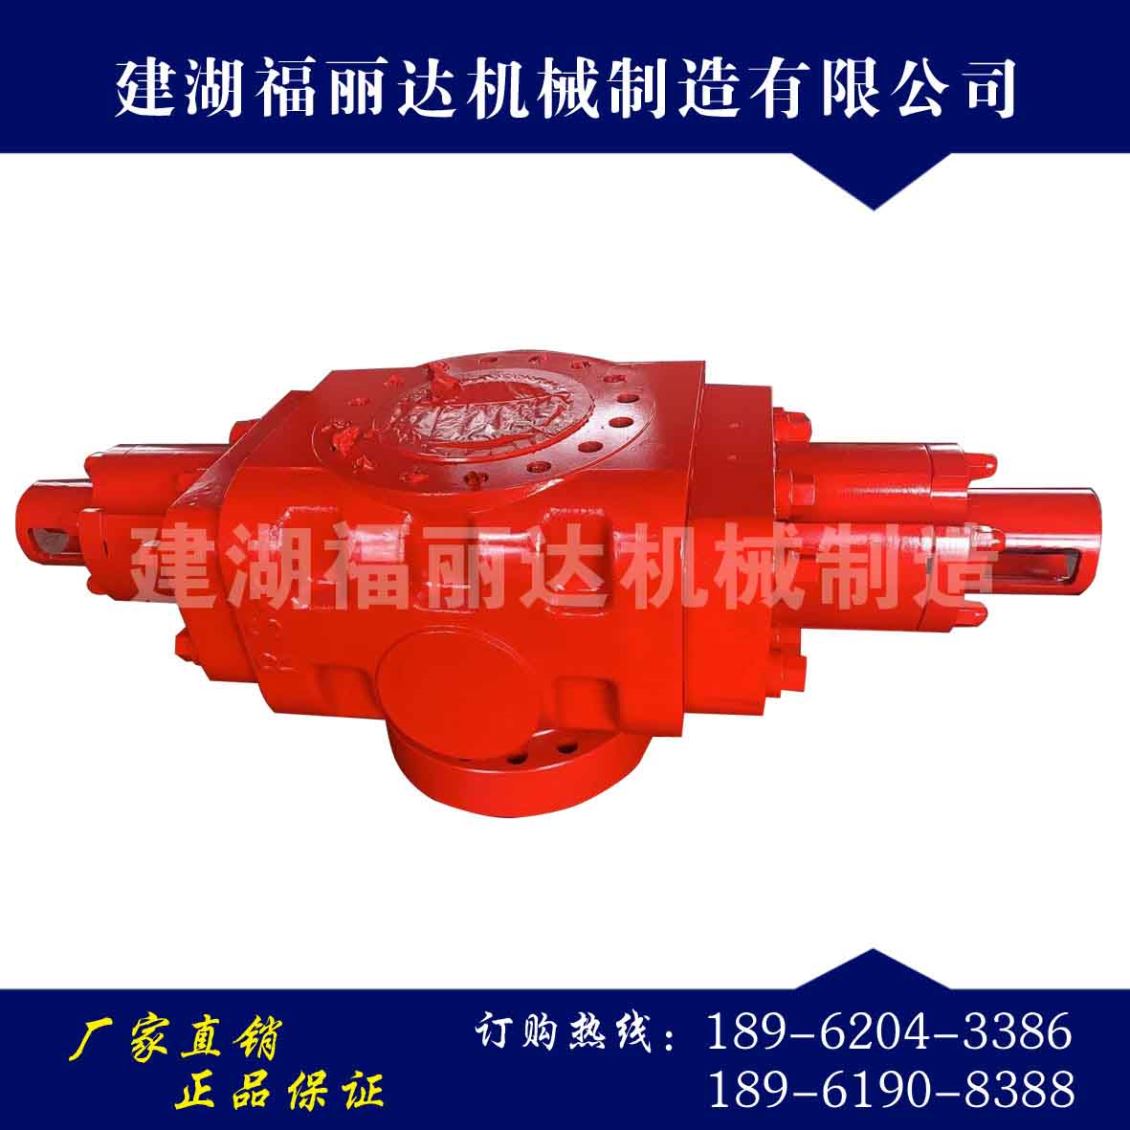 吉林防喷器是一种具有全密封和半密封两种功能的井控密封装置